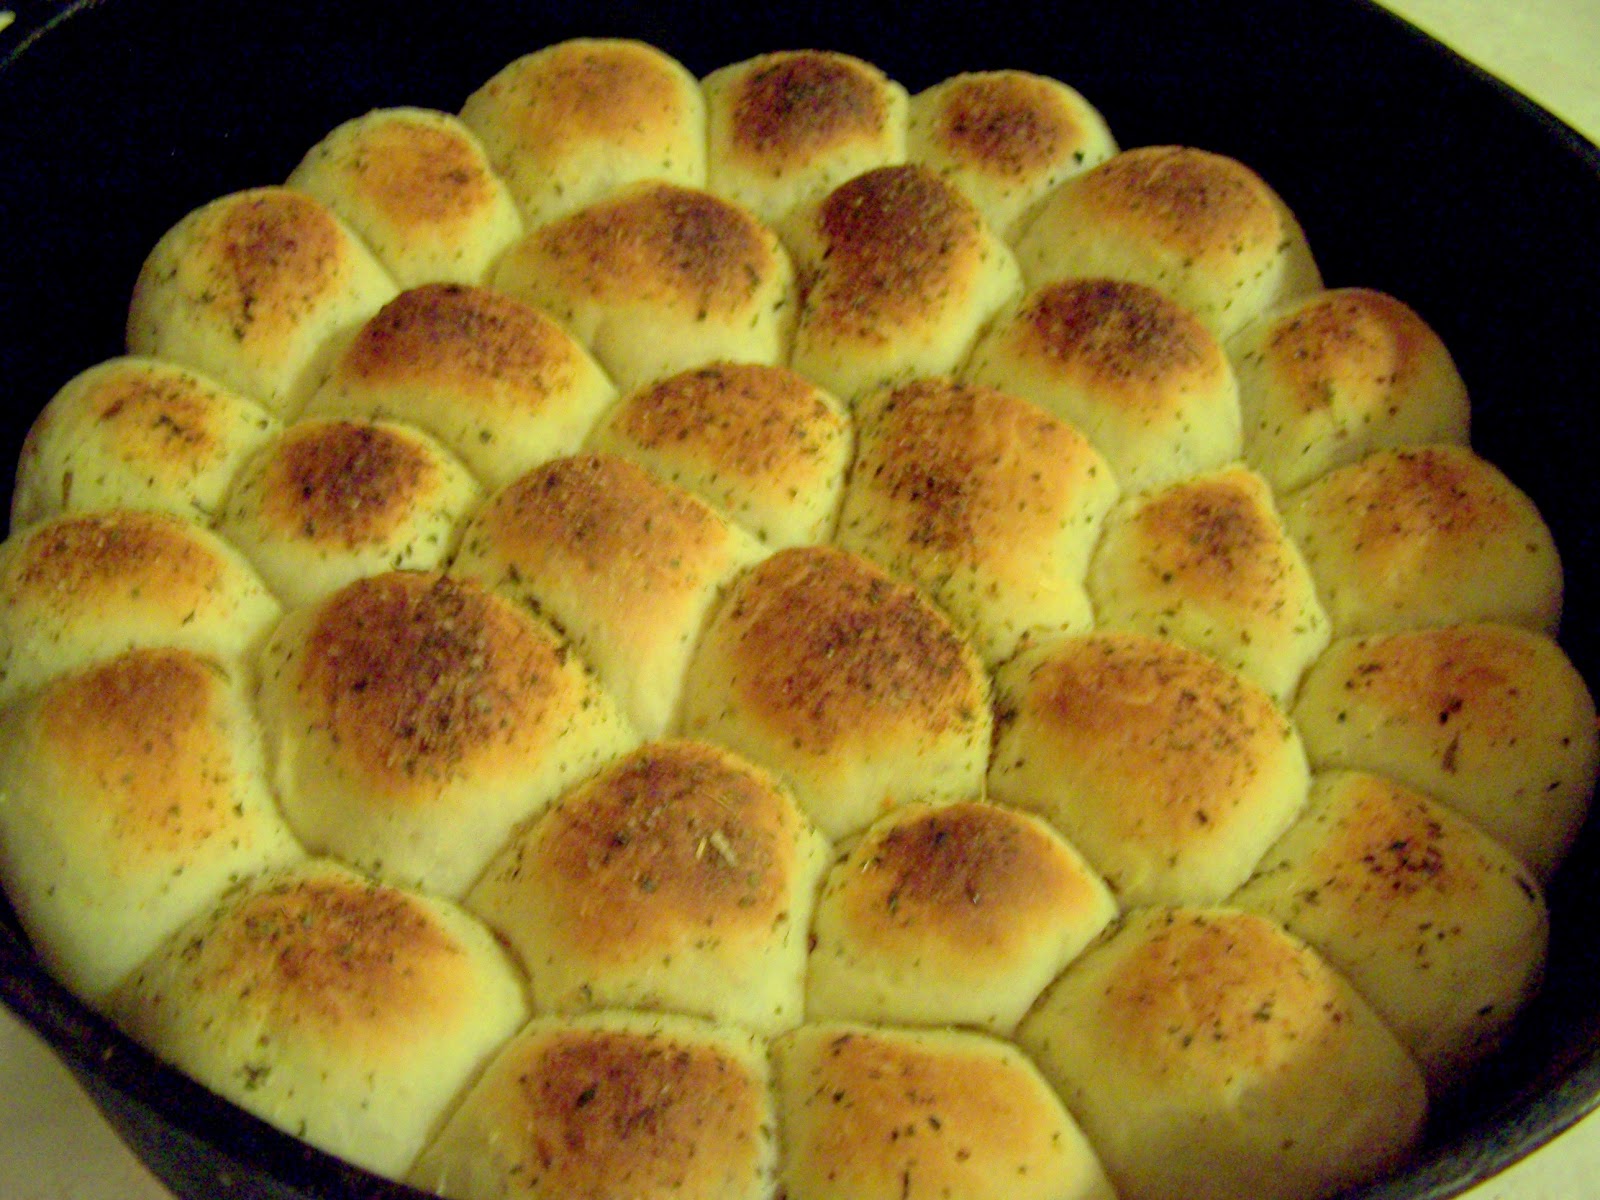 http://3.bp.blogspot.com/-P3uCR8k2XdU/UJAFifclOJI/AAAAAAAABvE/0v3lacnFFZ4/s1600/dutch+oven+meatball+monkey+bread.jpg